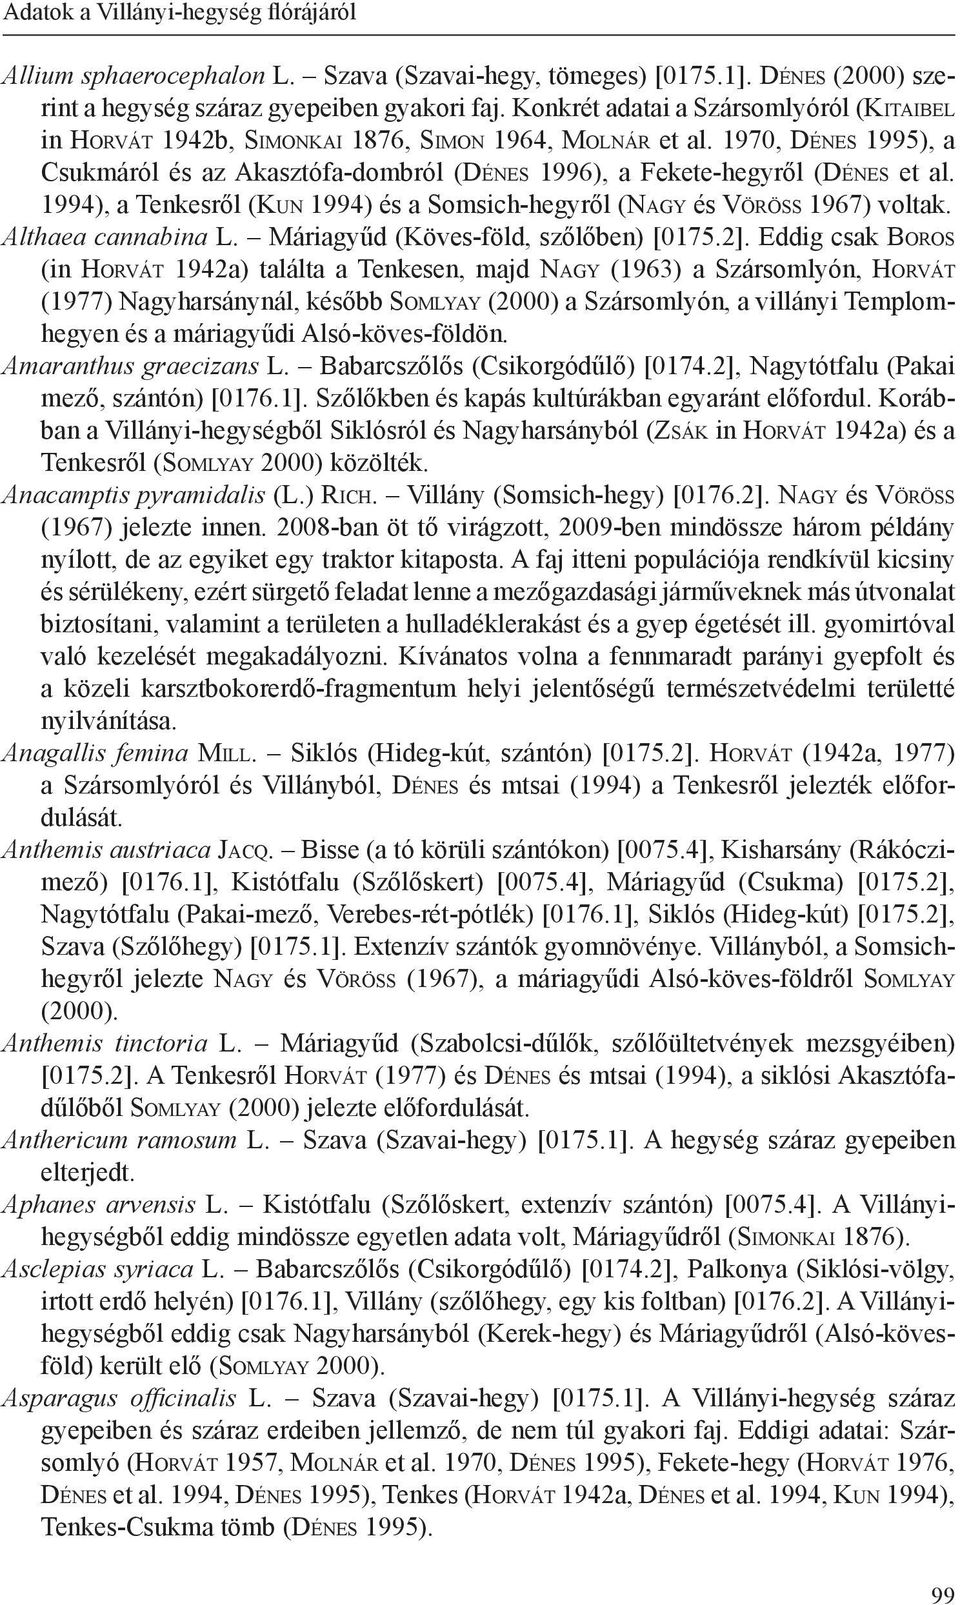 1970, Dé n e s 1995), a Csukmáról és az Akasztófa-dombról (Dé n e s 1996), a Fekete-hegyről (Dé n e s et al. 1994), a Tenkesről (Ku n 1994) és a Somsich-hegyről (Na g y és Vö r ö s s 1967) voltak.